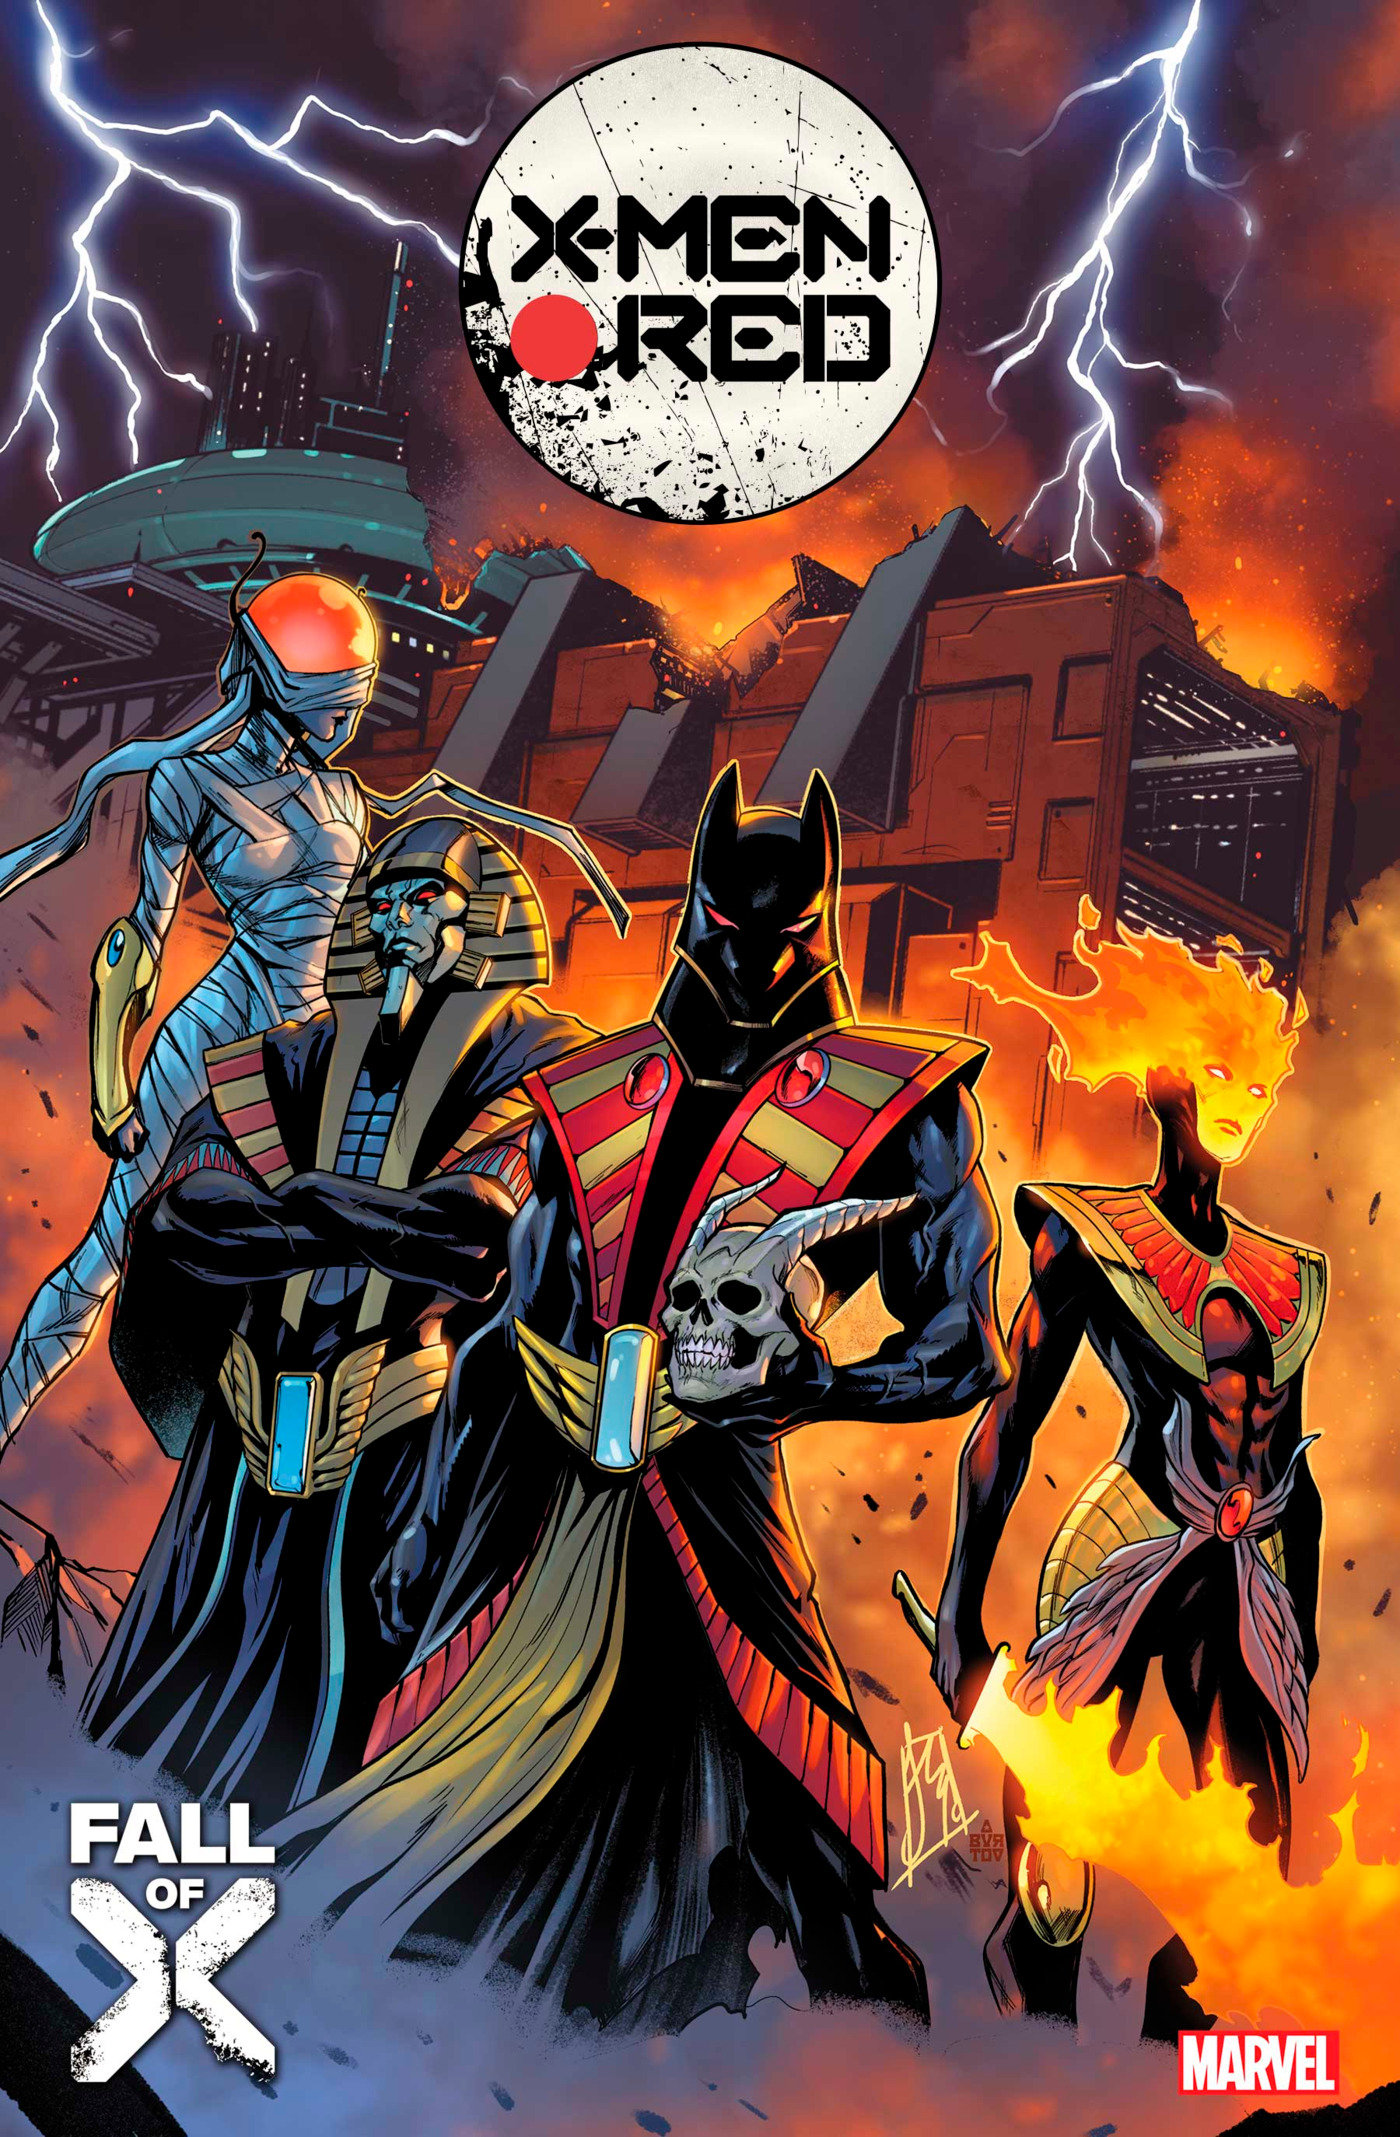 X-Men Red #16 (Fall of the X-Men)